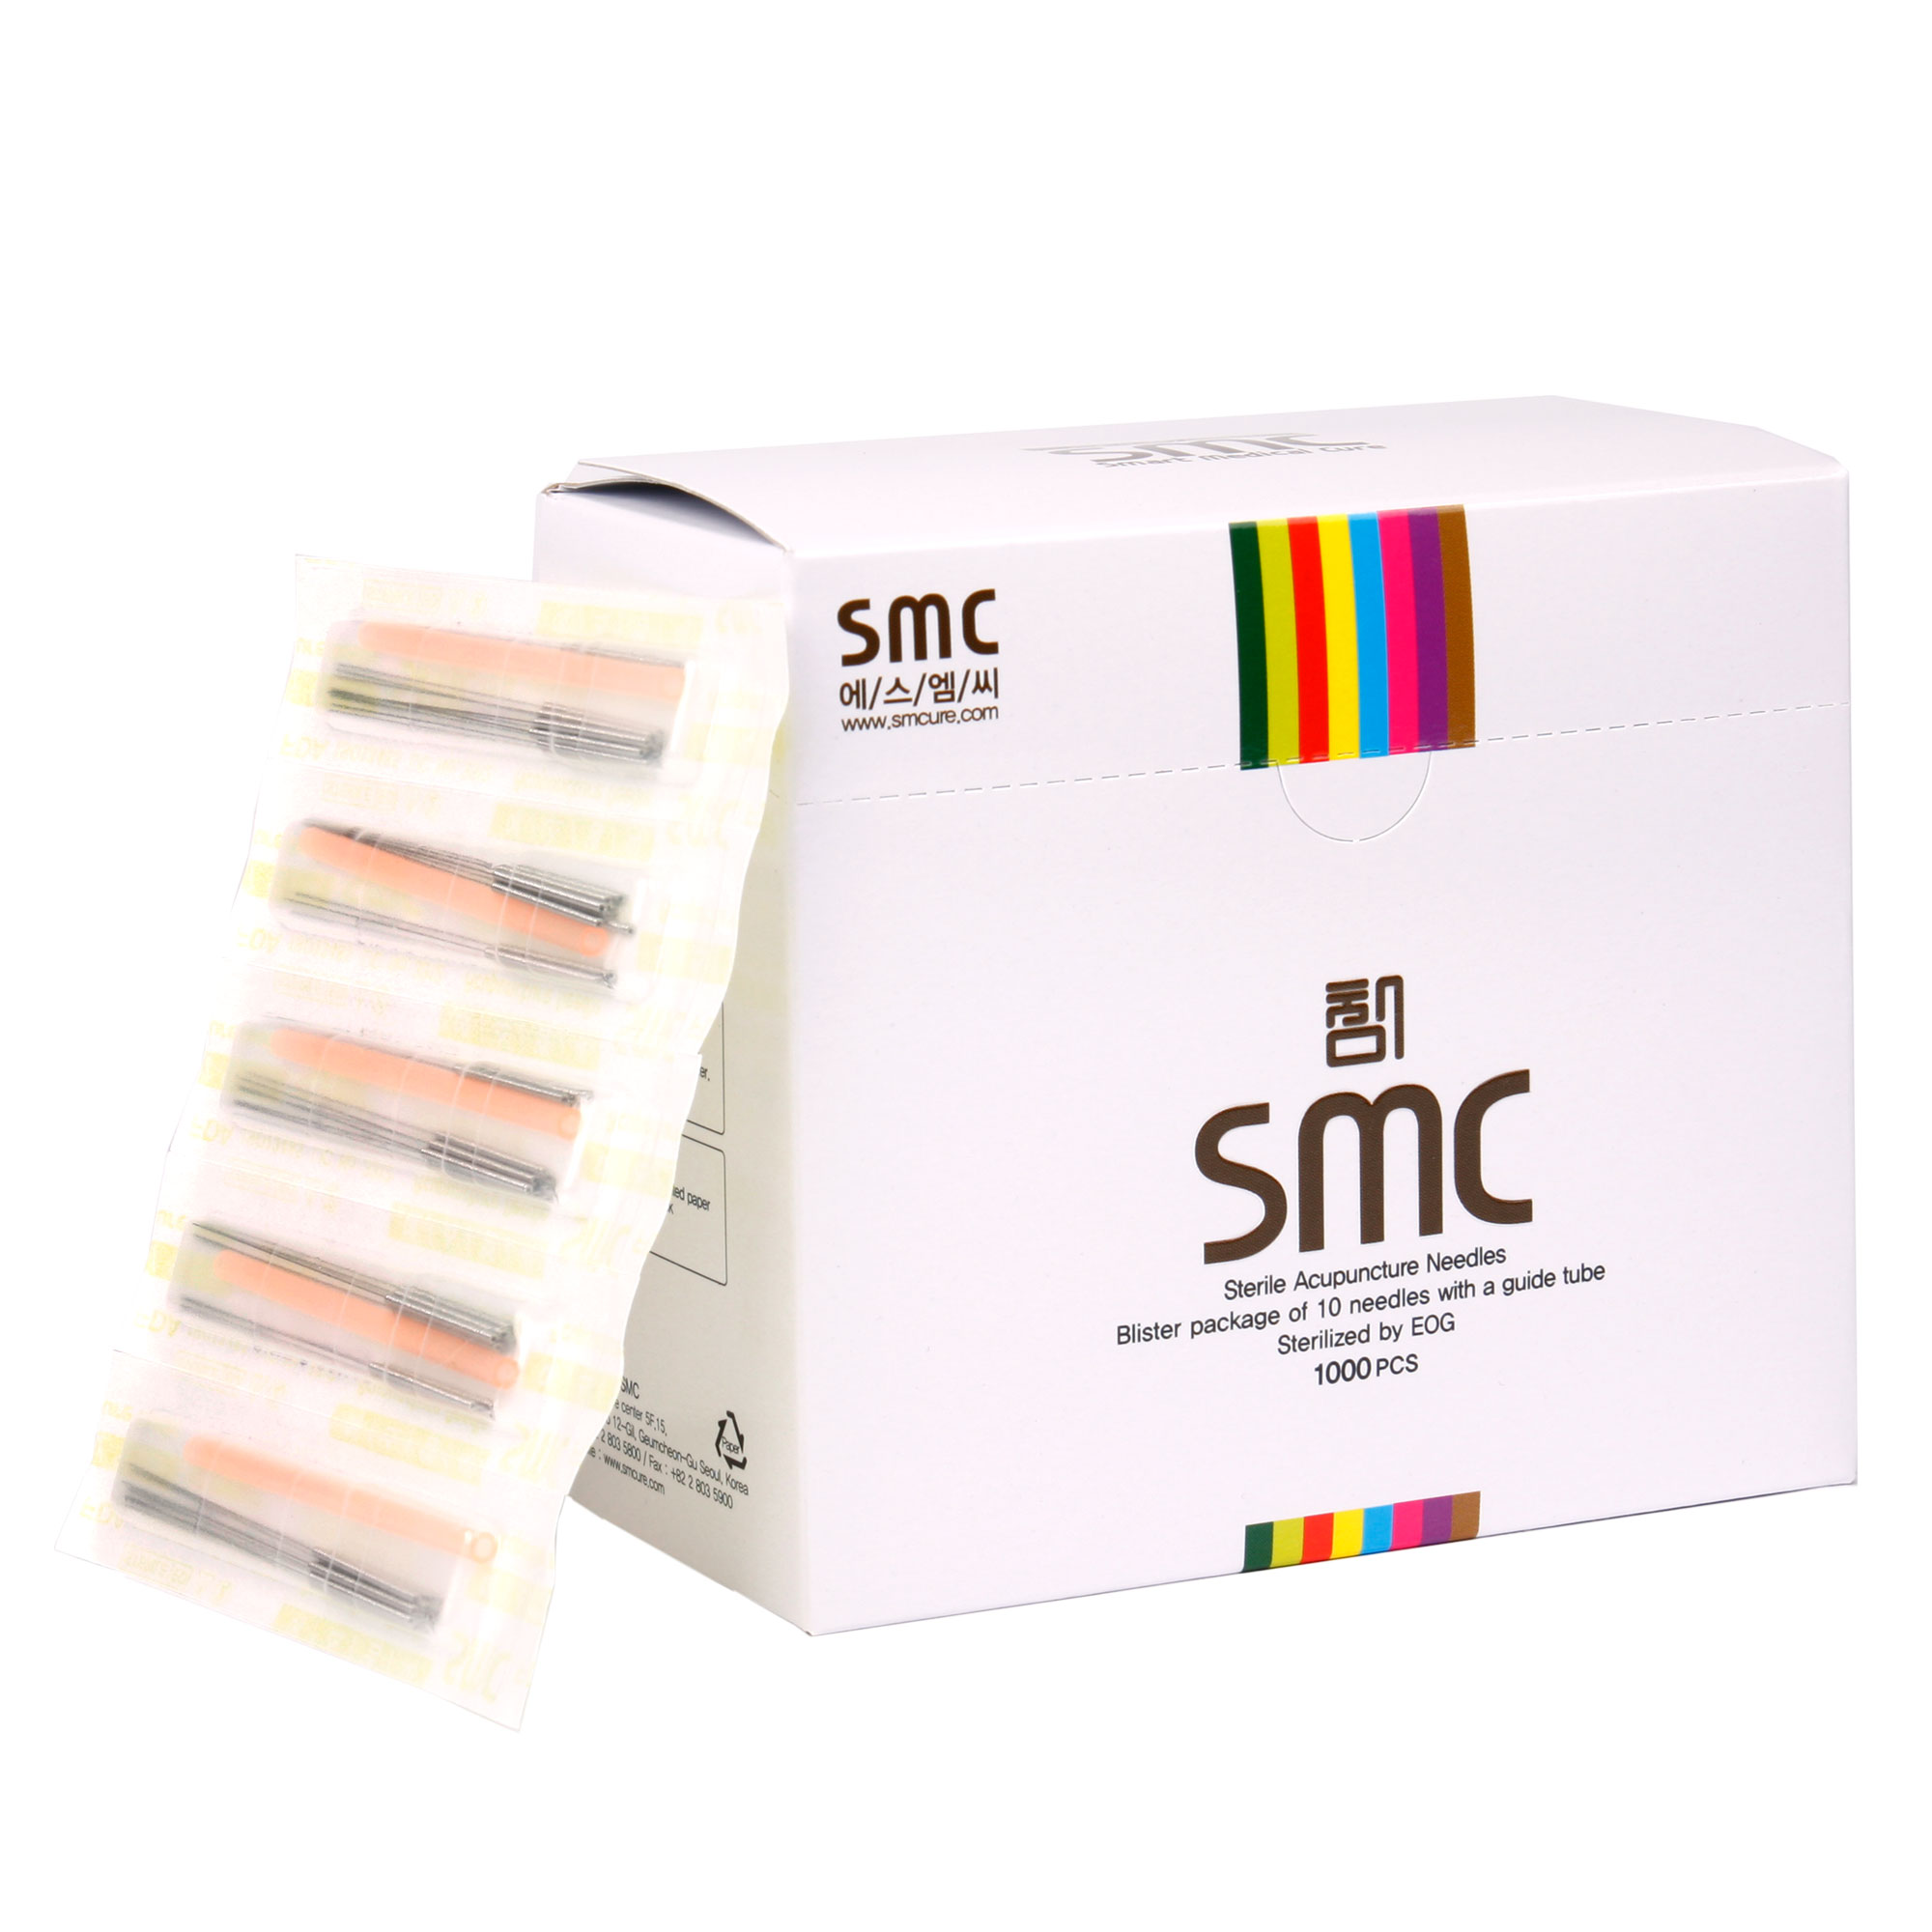 SMC Akupunktur iğnesi 0.25x40mm